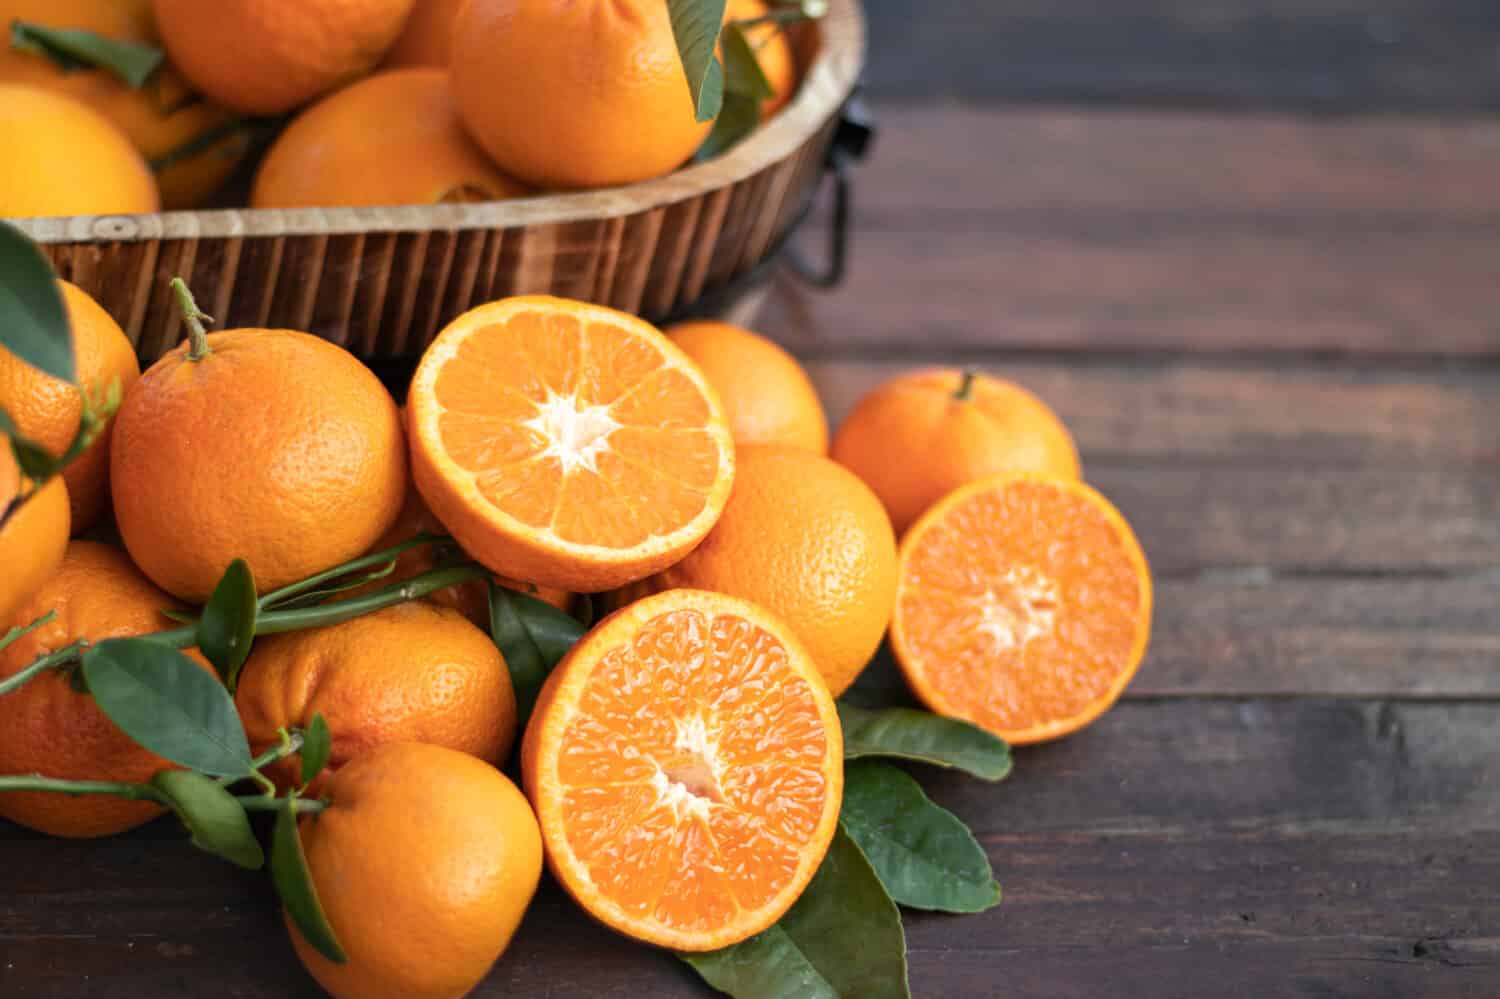 Frutta arancione con foglie verdi sul legno.  Giardinaggio domestico.  Arance mandarine.  Arance mandarini.  Colore arancione.  Succo d'arancia fresco.